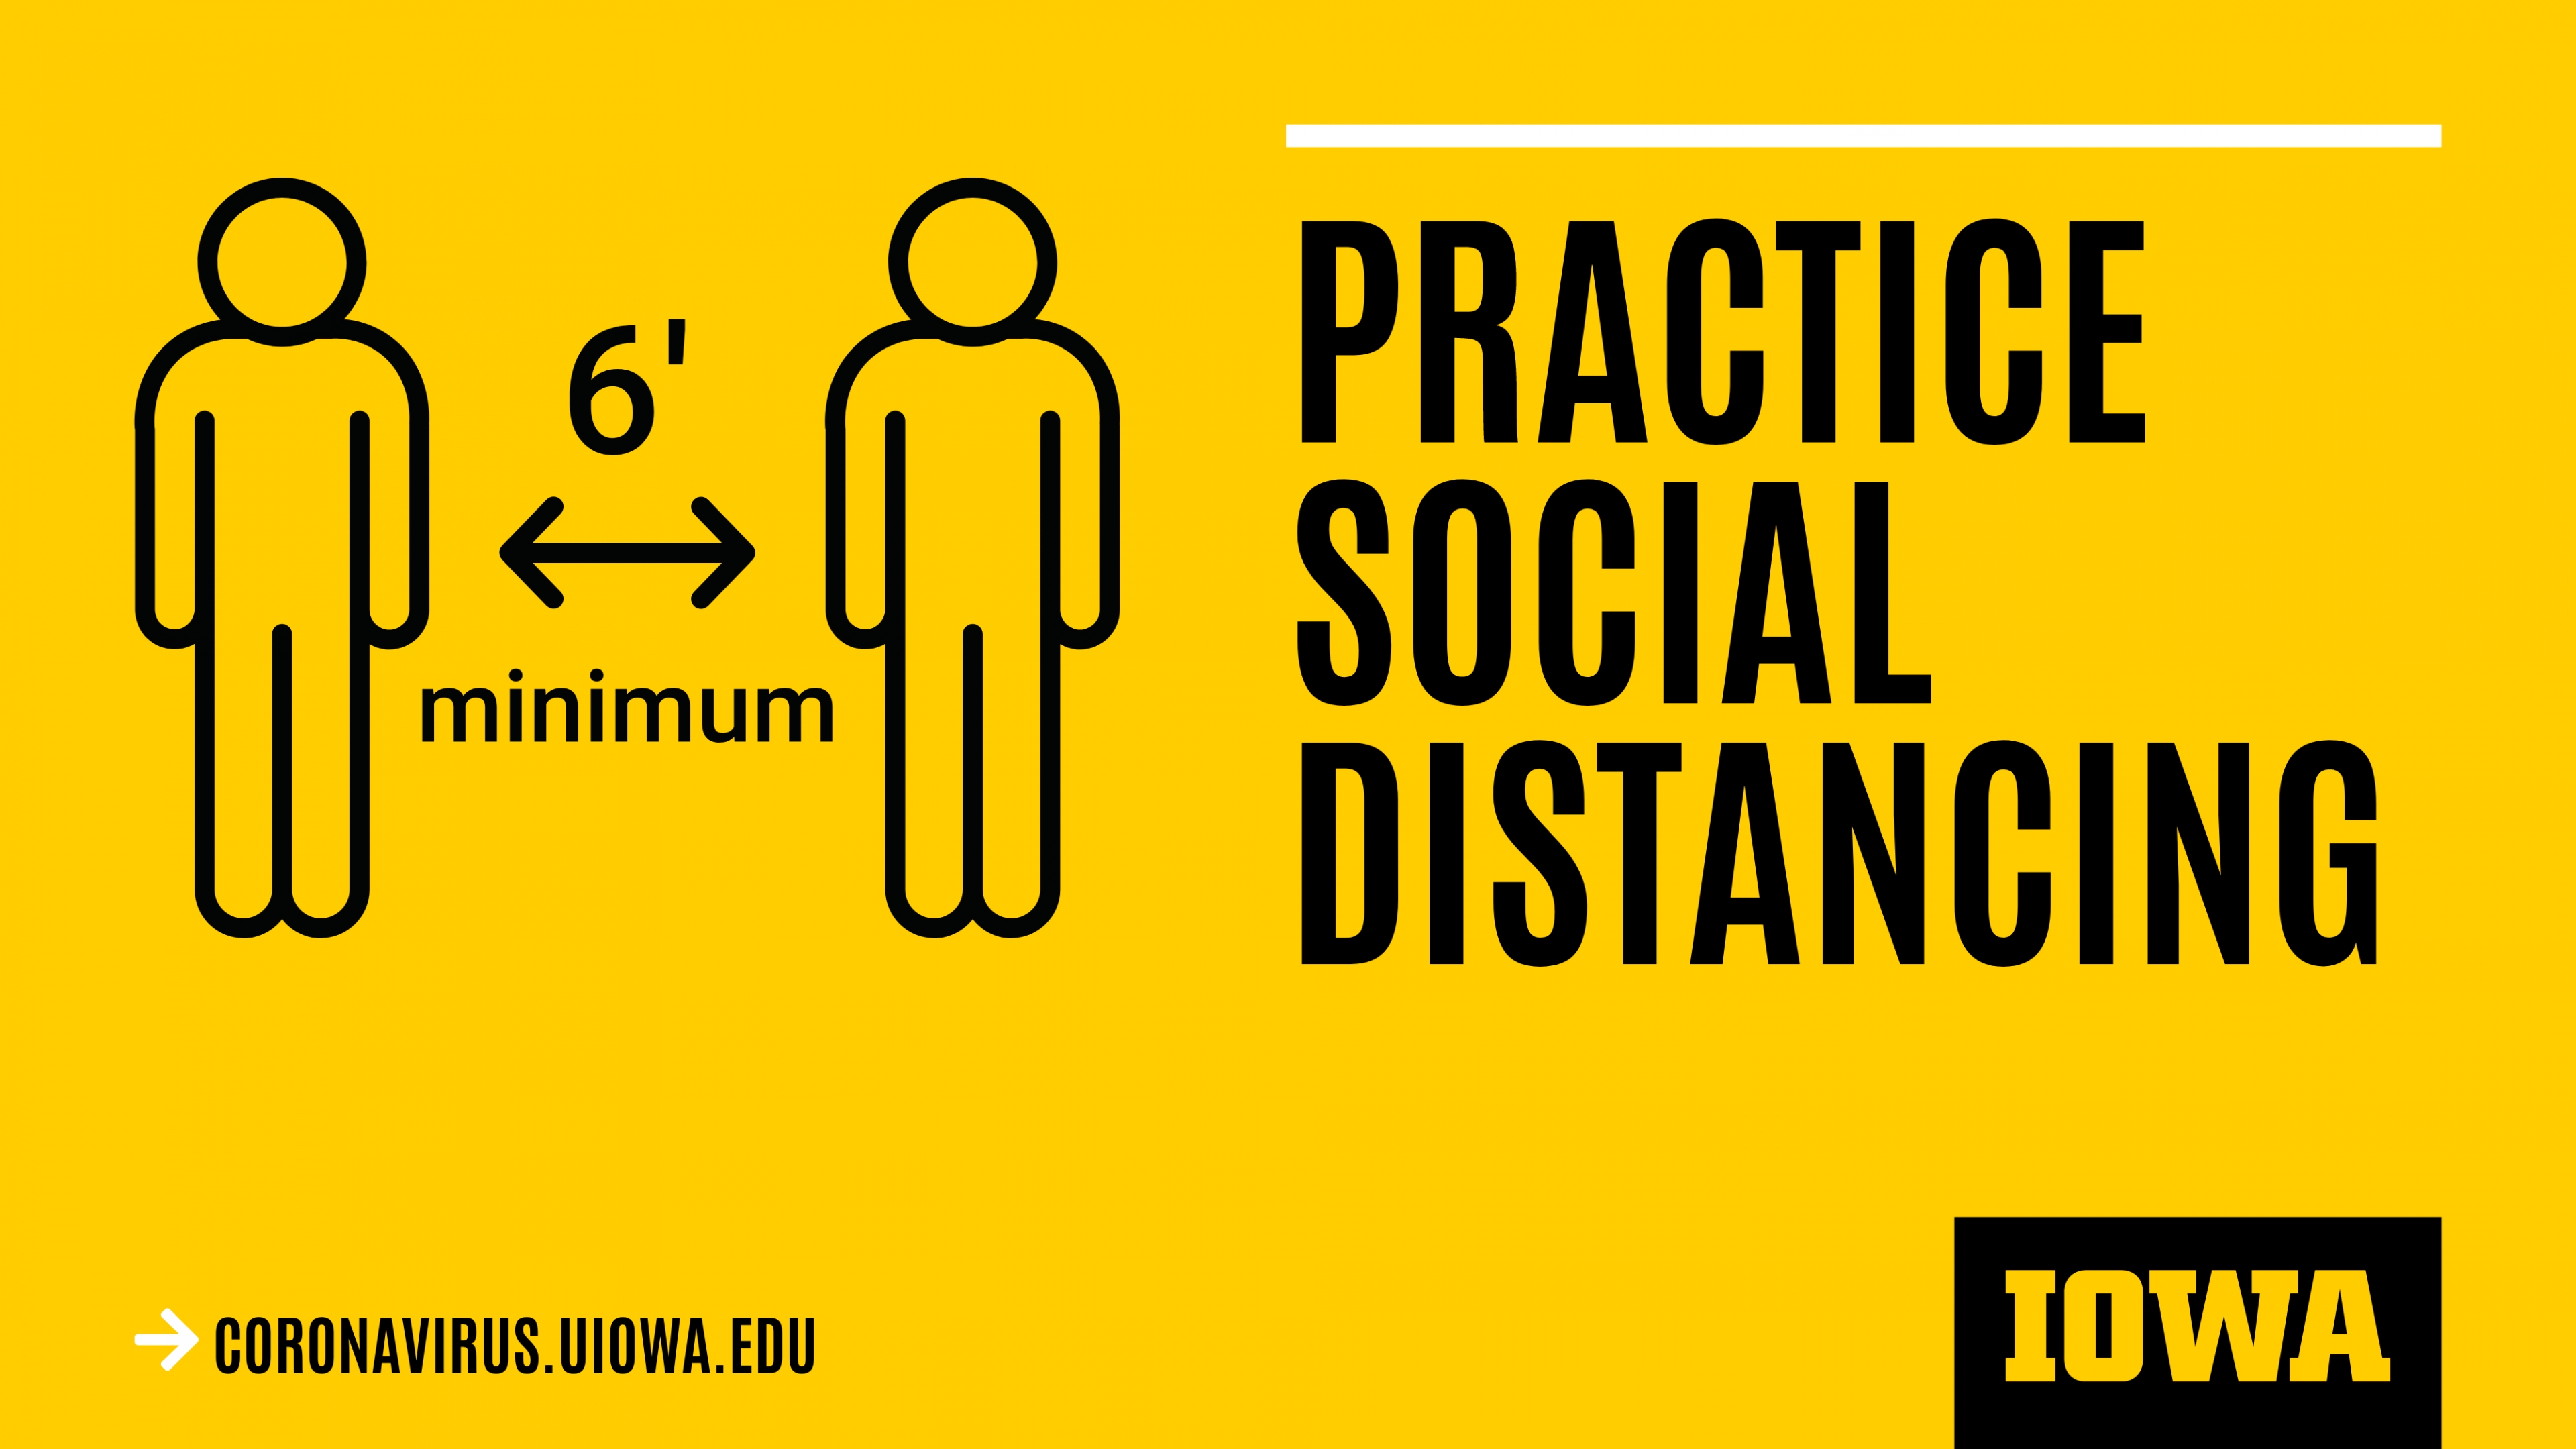 practice social distancing